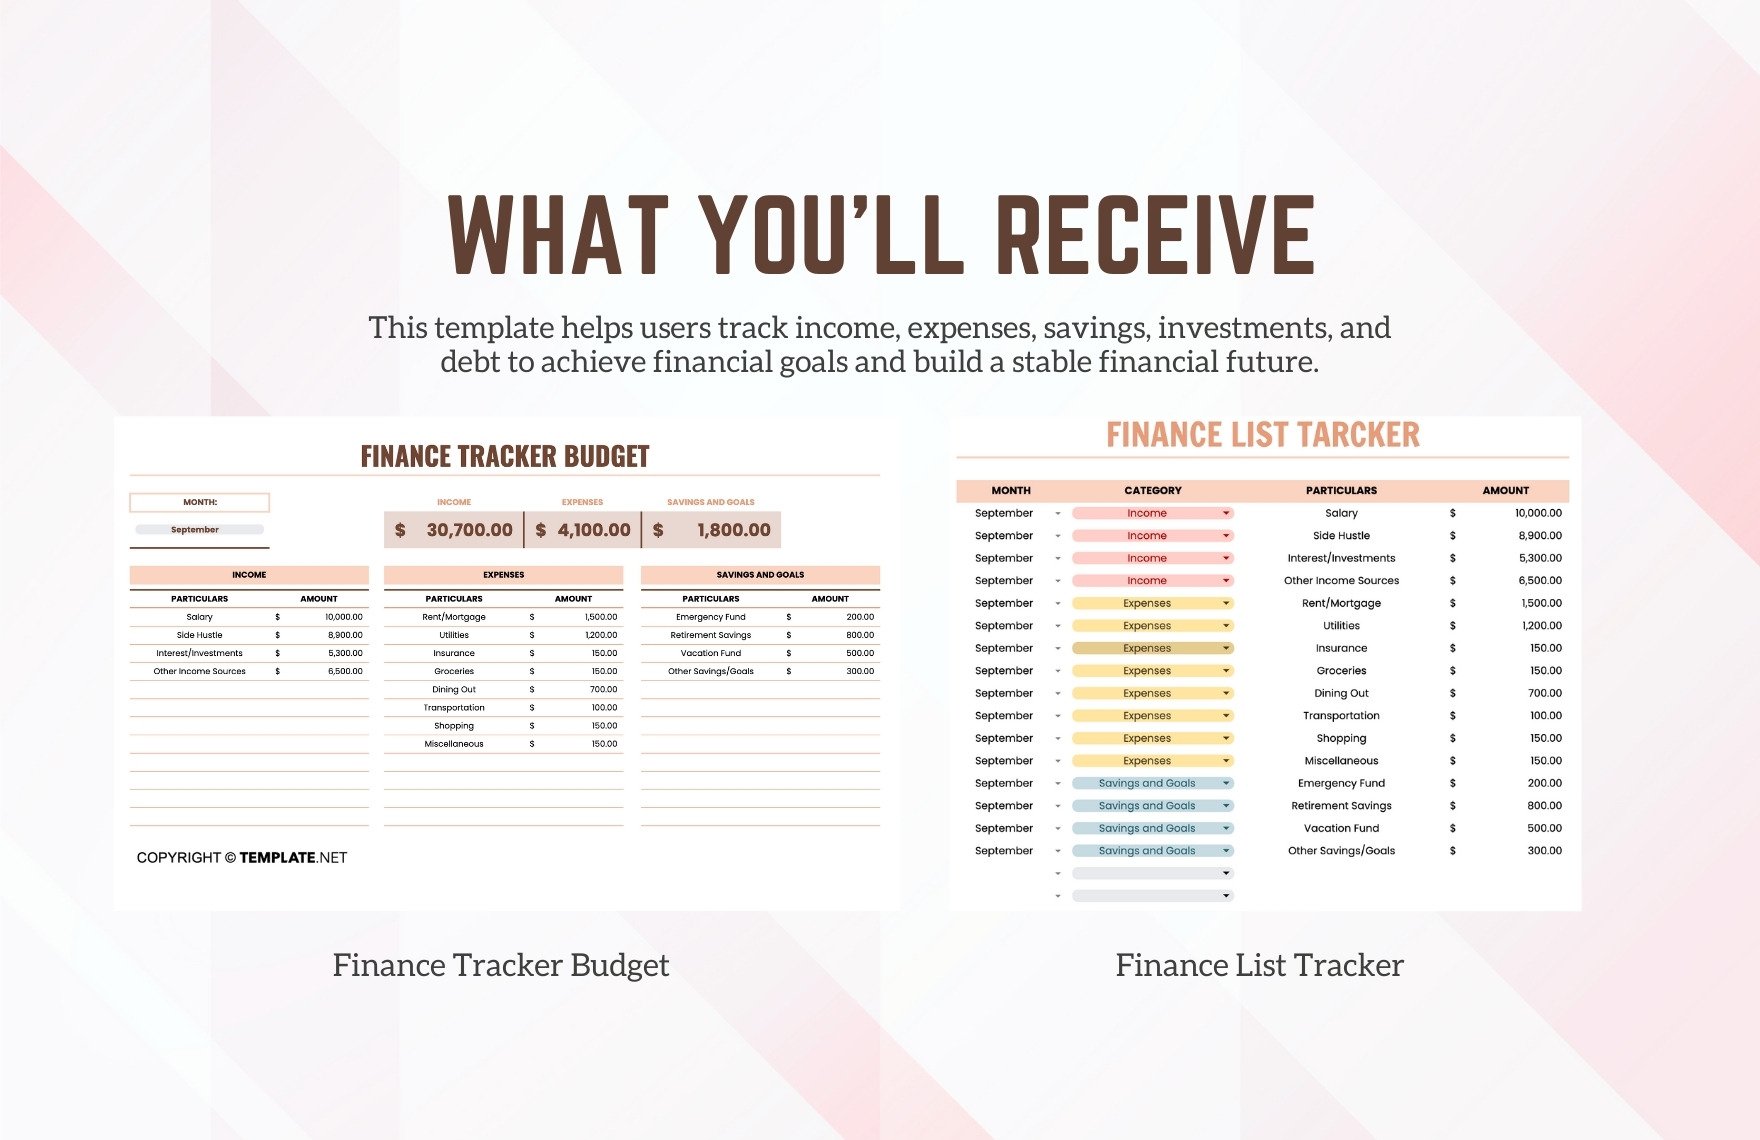 Finance Tracker Budget Template